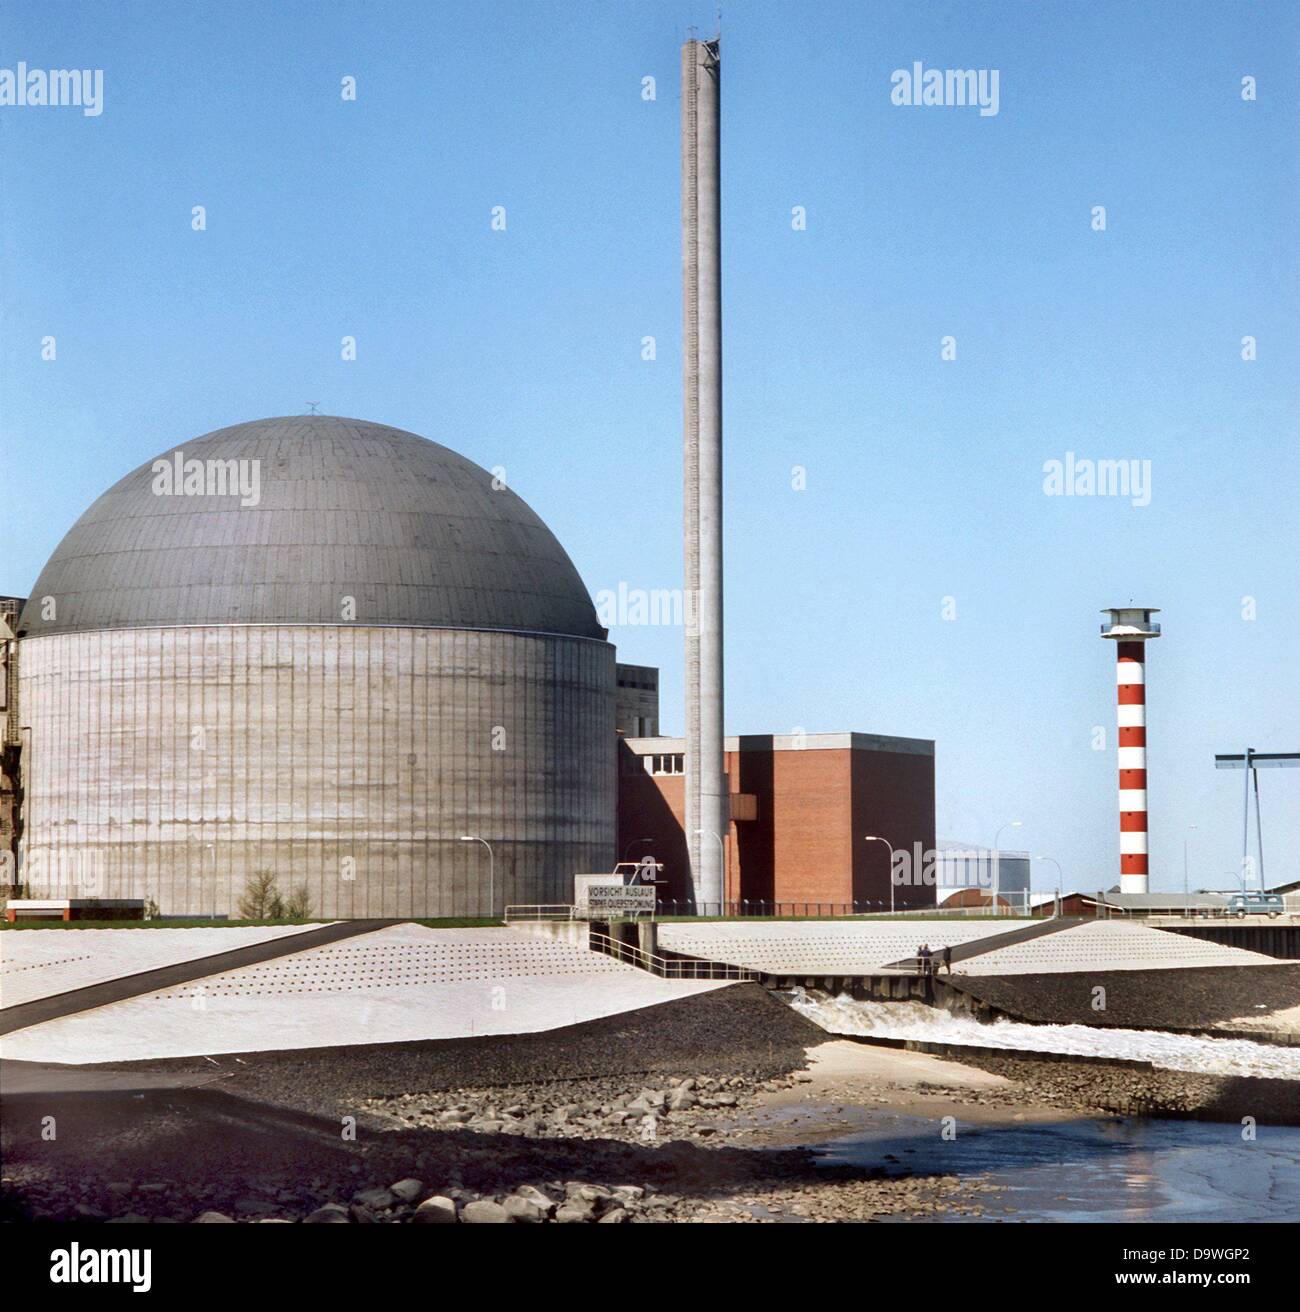 Vue de la centrale nucléaire de Stade, la première centrale nucléaire exploités commercialement dans la République fédérale d'Allemagne. Photographié en mai 1973. Banque D'Images